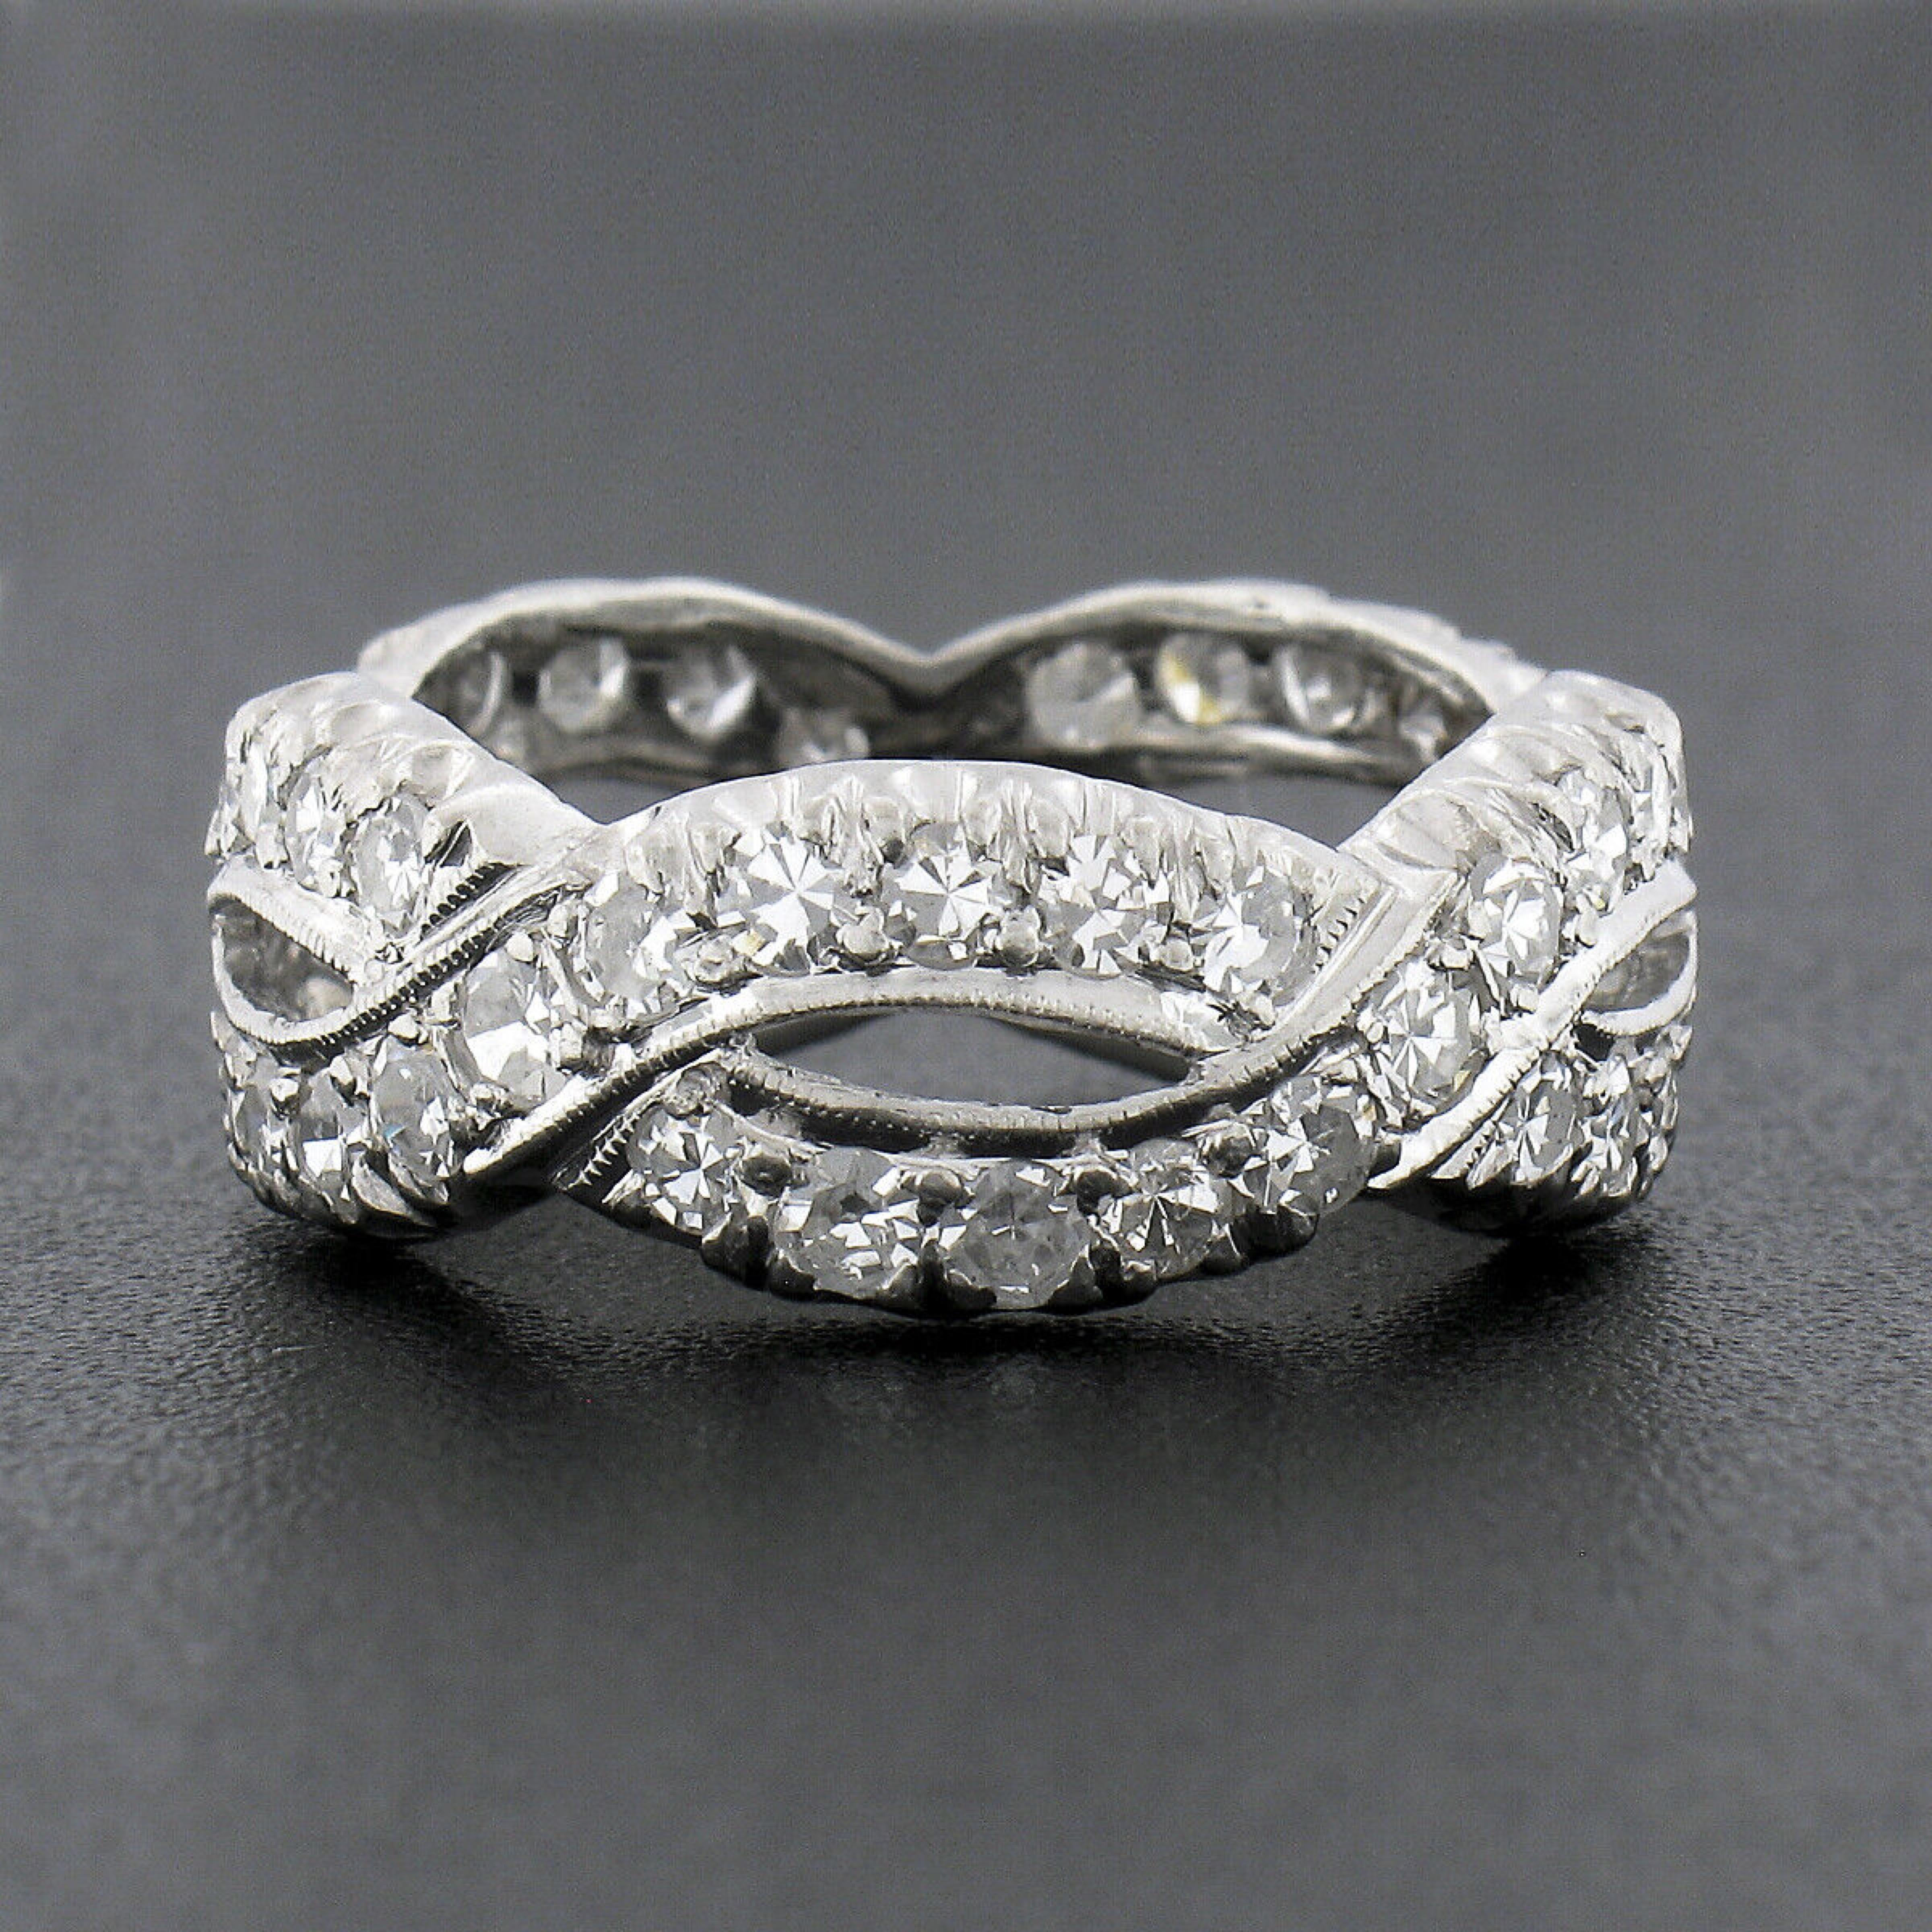 Diese wirklich atemberaubende antike Diamant Eternity Band Ring wurde in den 1940er Jahren aus massivem Platin gefertigt und verfügt über eine unendliche geflochtene Design mit etwa 1,90 Karat von feiner Qualität Diamanten ordentlich pflastern über